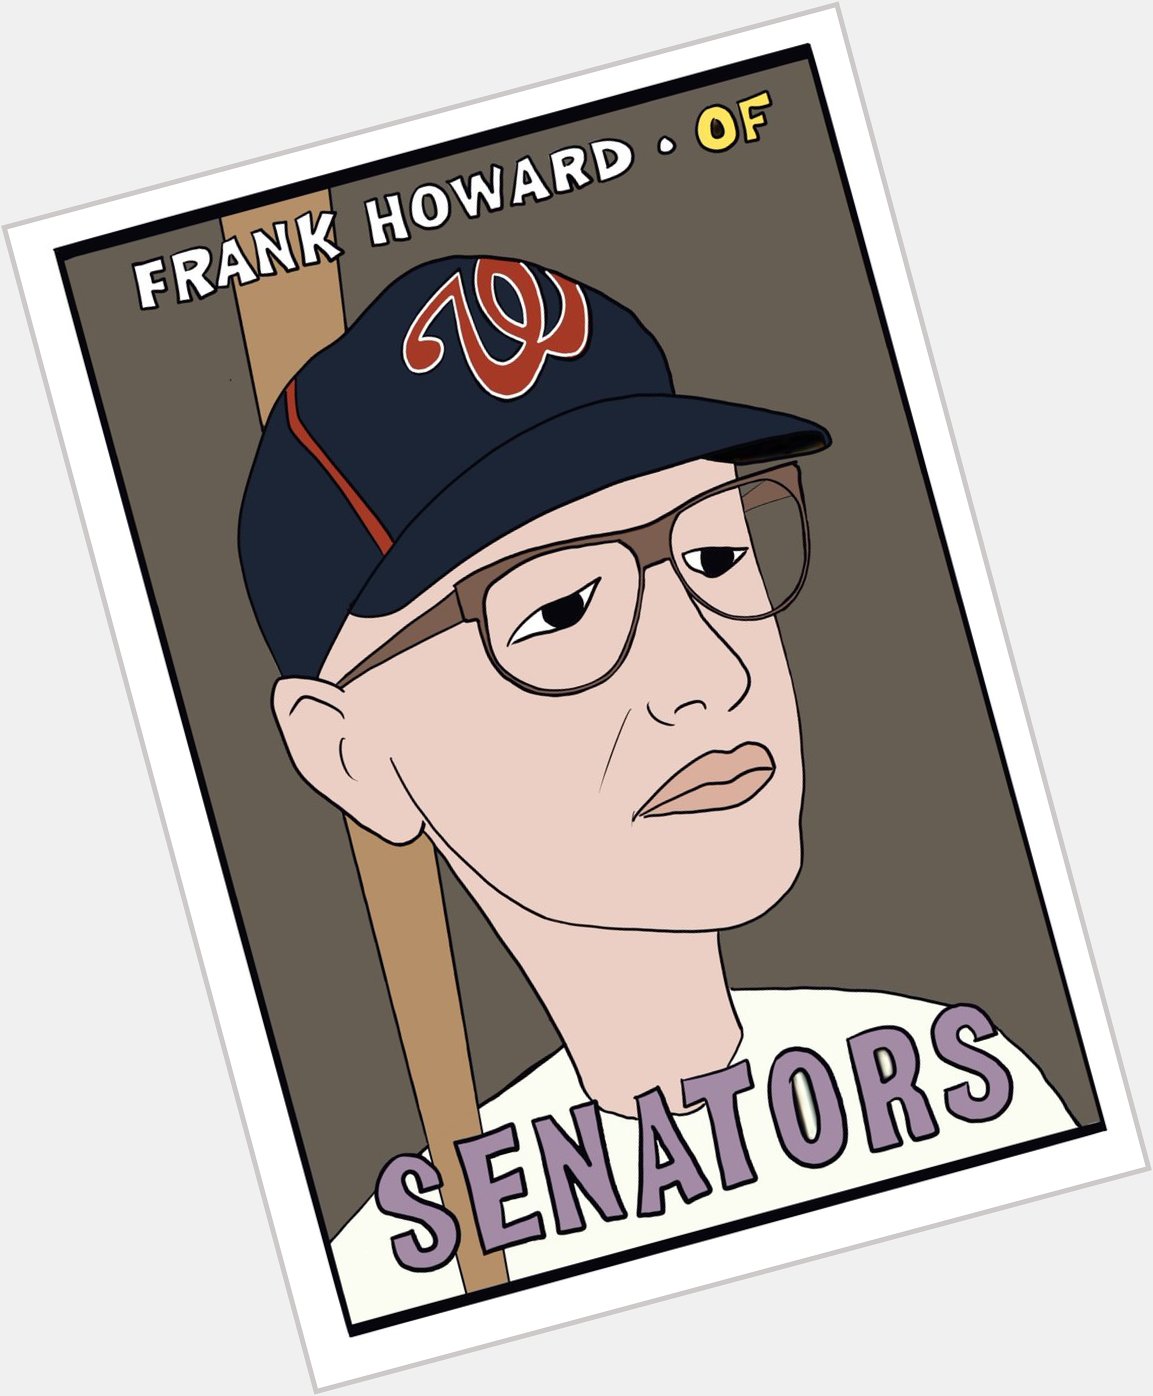 Happy Birthday Frank Howard 